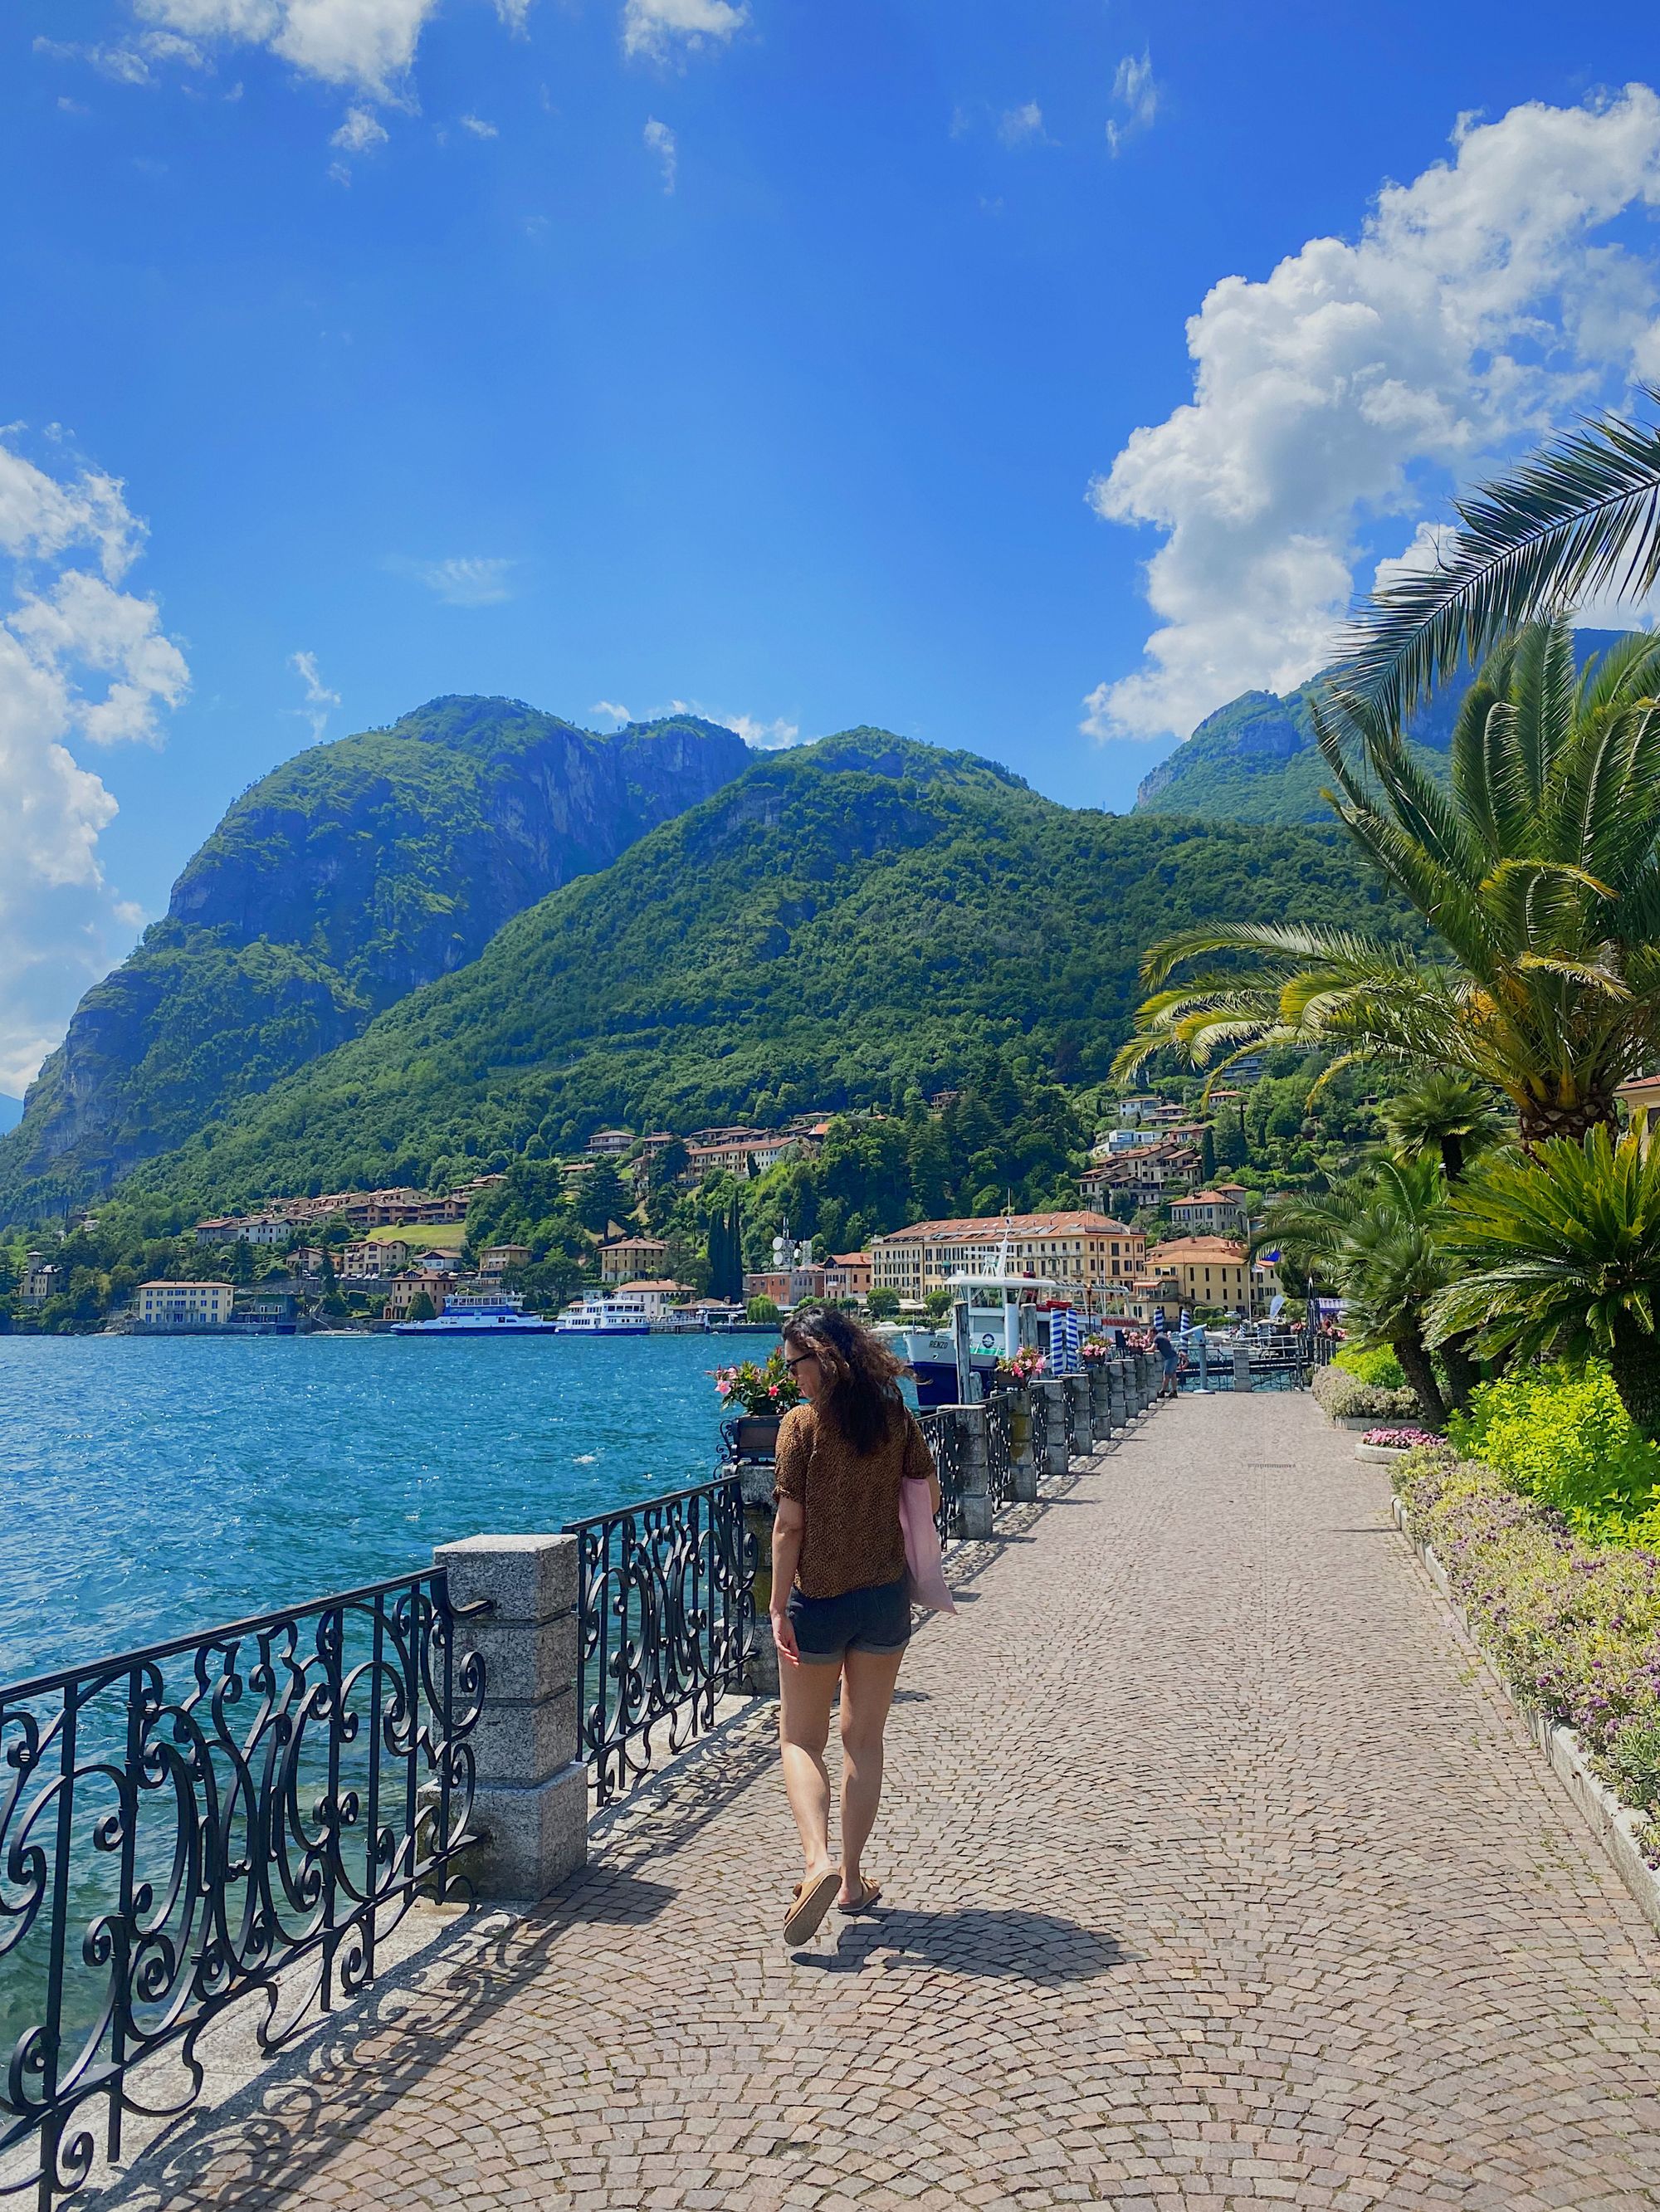 The promenade of Menaggio on the shore of Lake Como